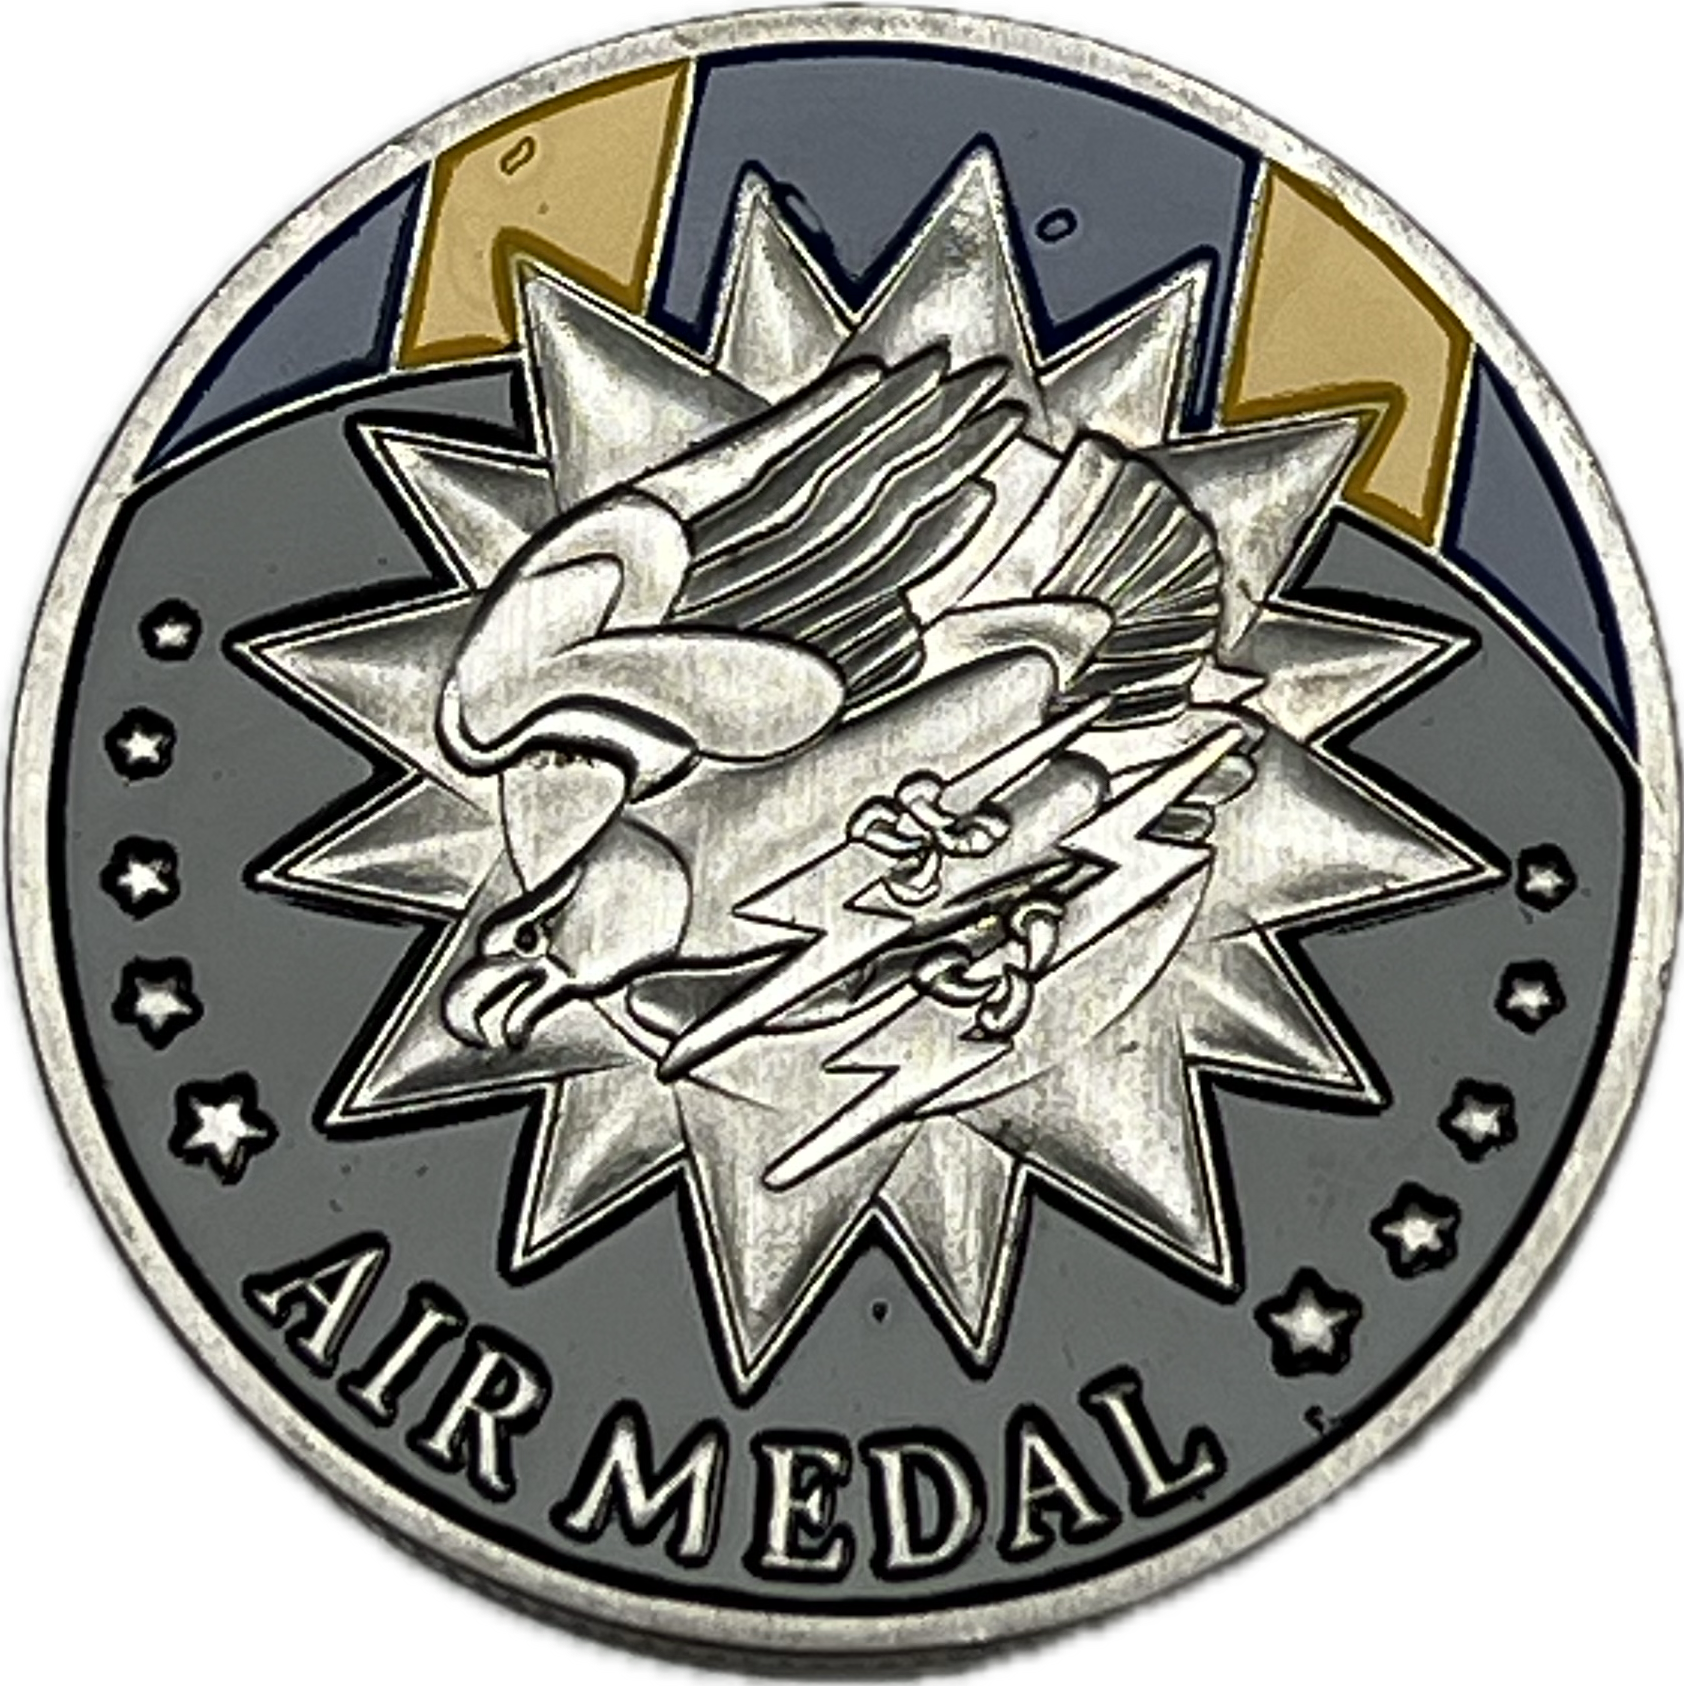 Air Medal - Coin